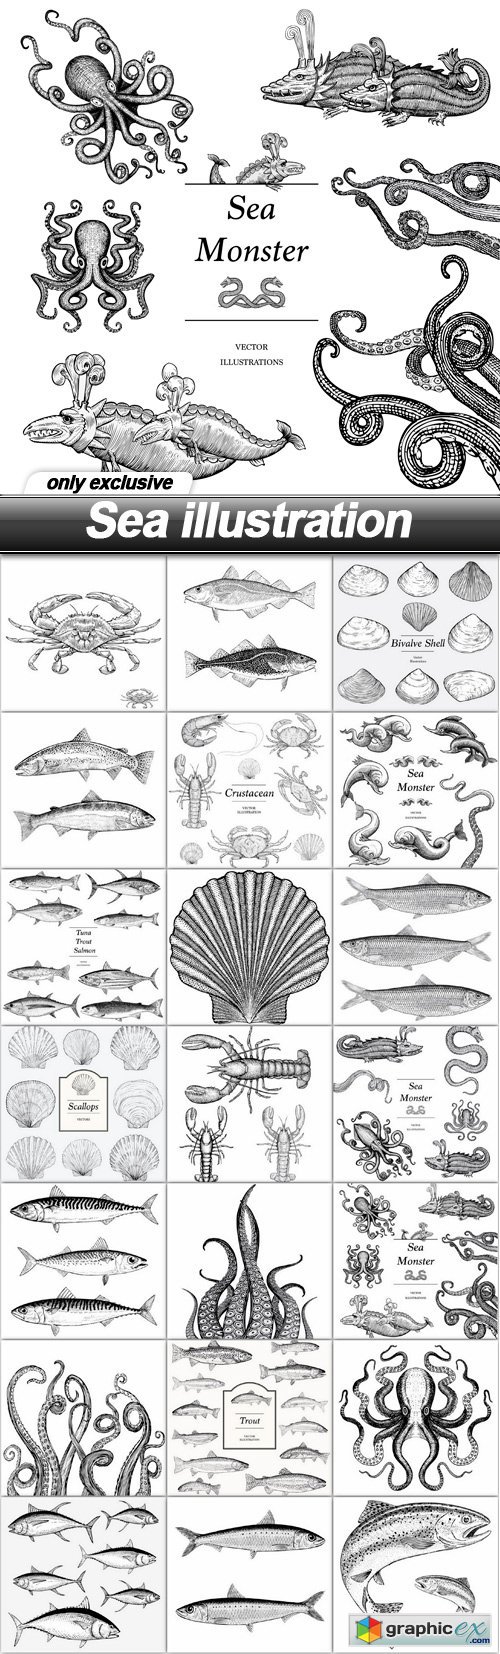 Sea illustration - 21 EPS